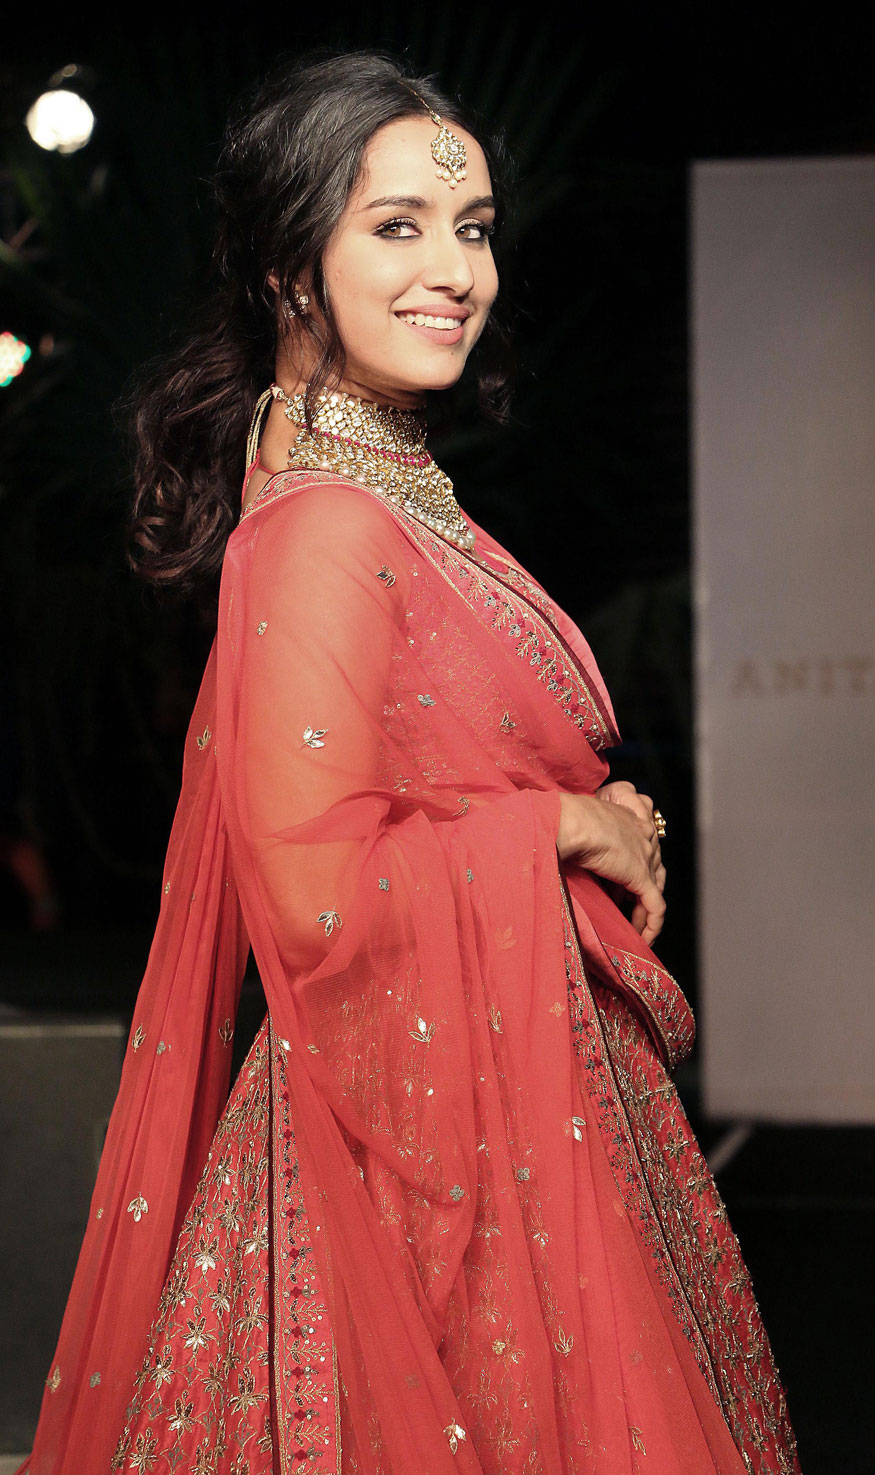 Shraddha Kapoor Walks The Runway During The Wedding Kapoor Bridal Look